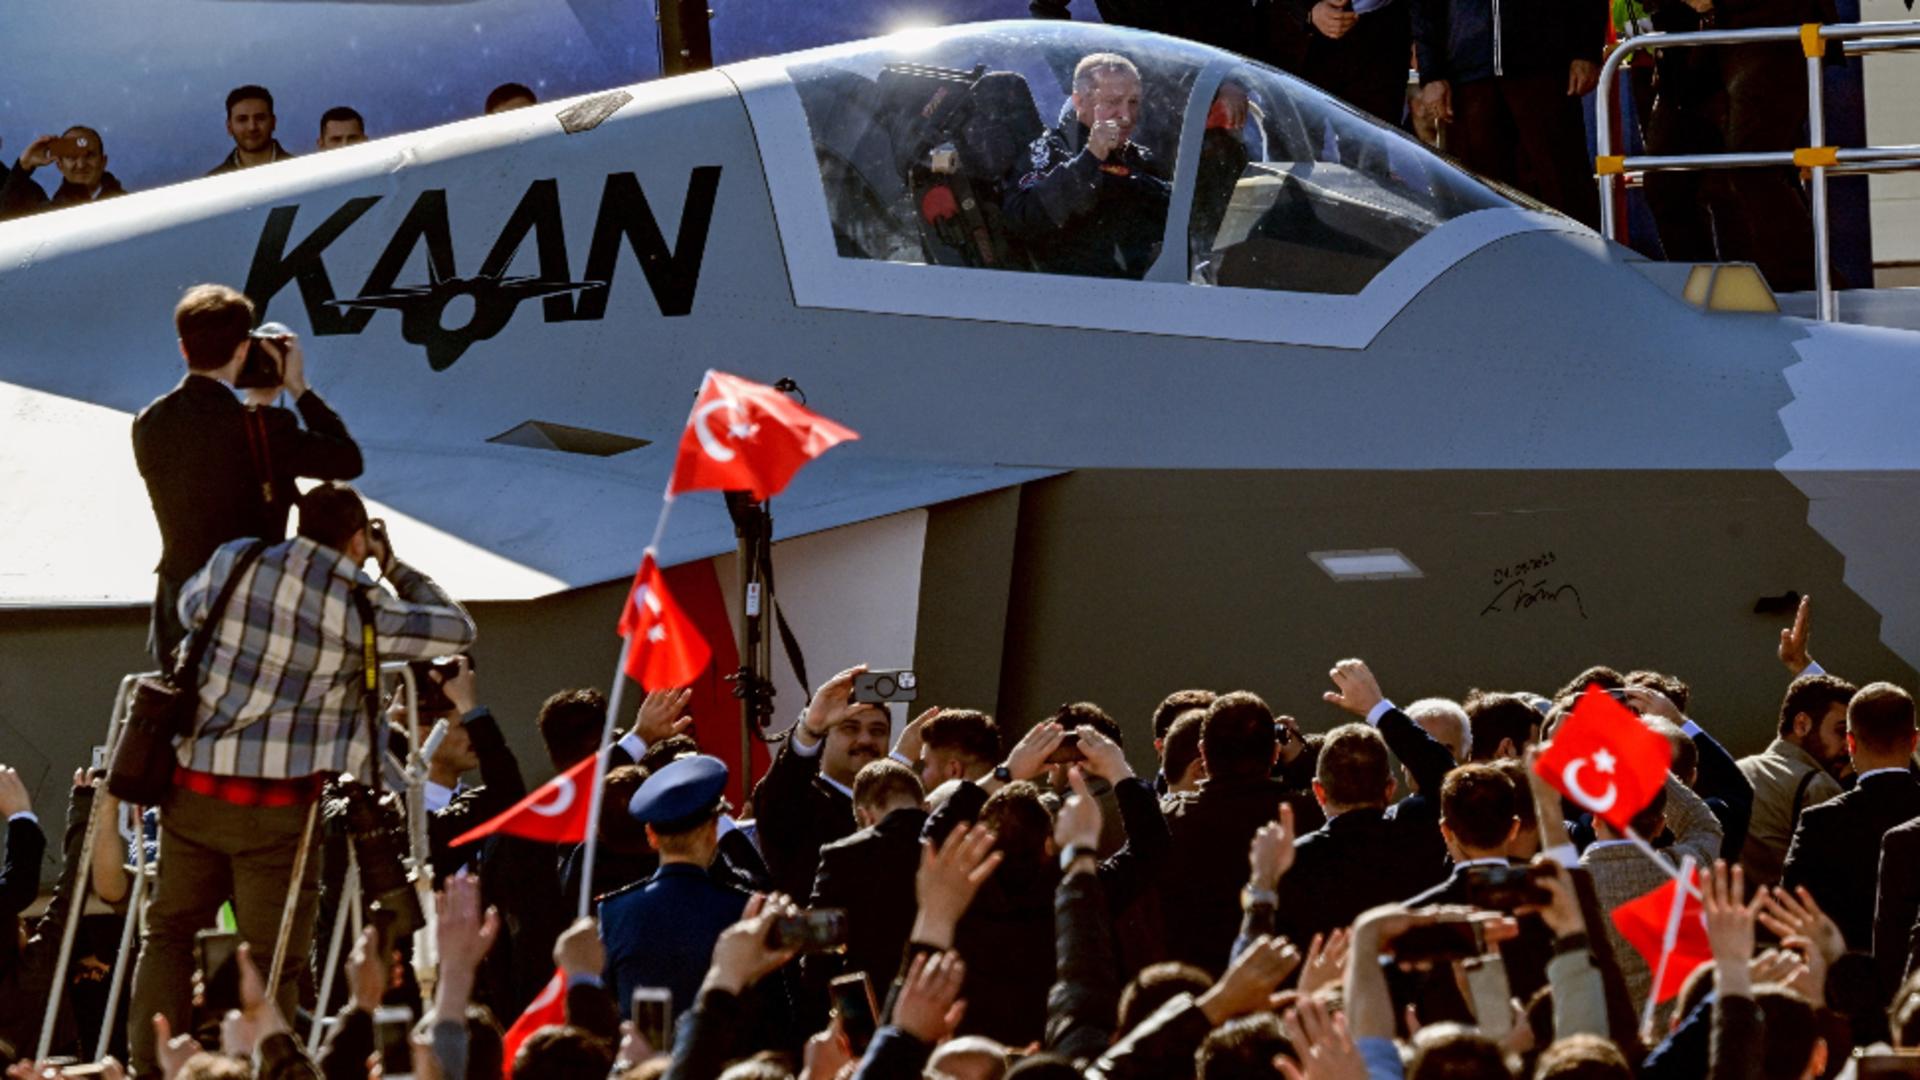 Președintele Erdogan la bordul unui prototop KAAN, perla aviației turce (Profimedia)